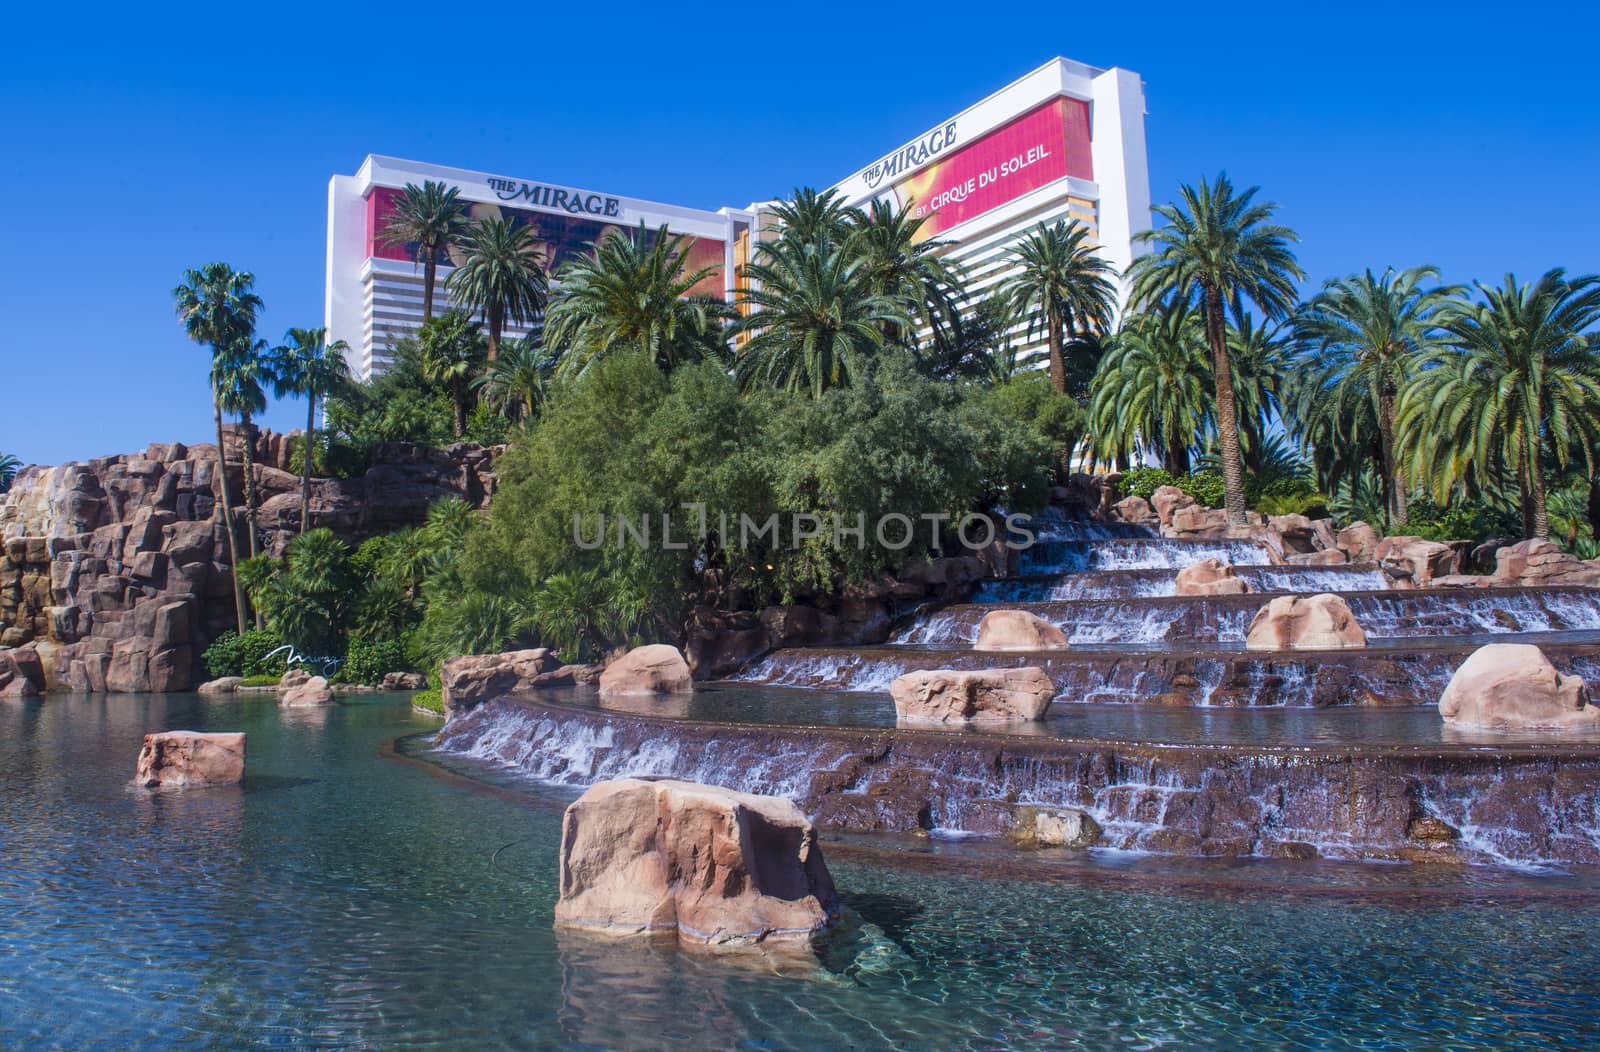 Las Vegas - Mirage by kobby_dagan